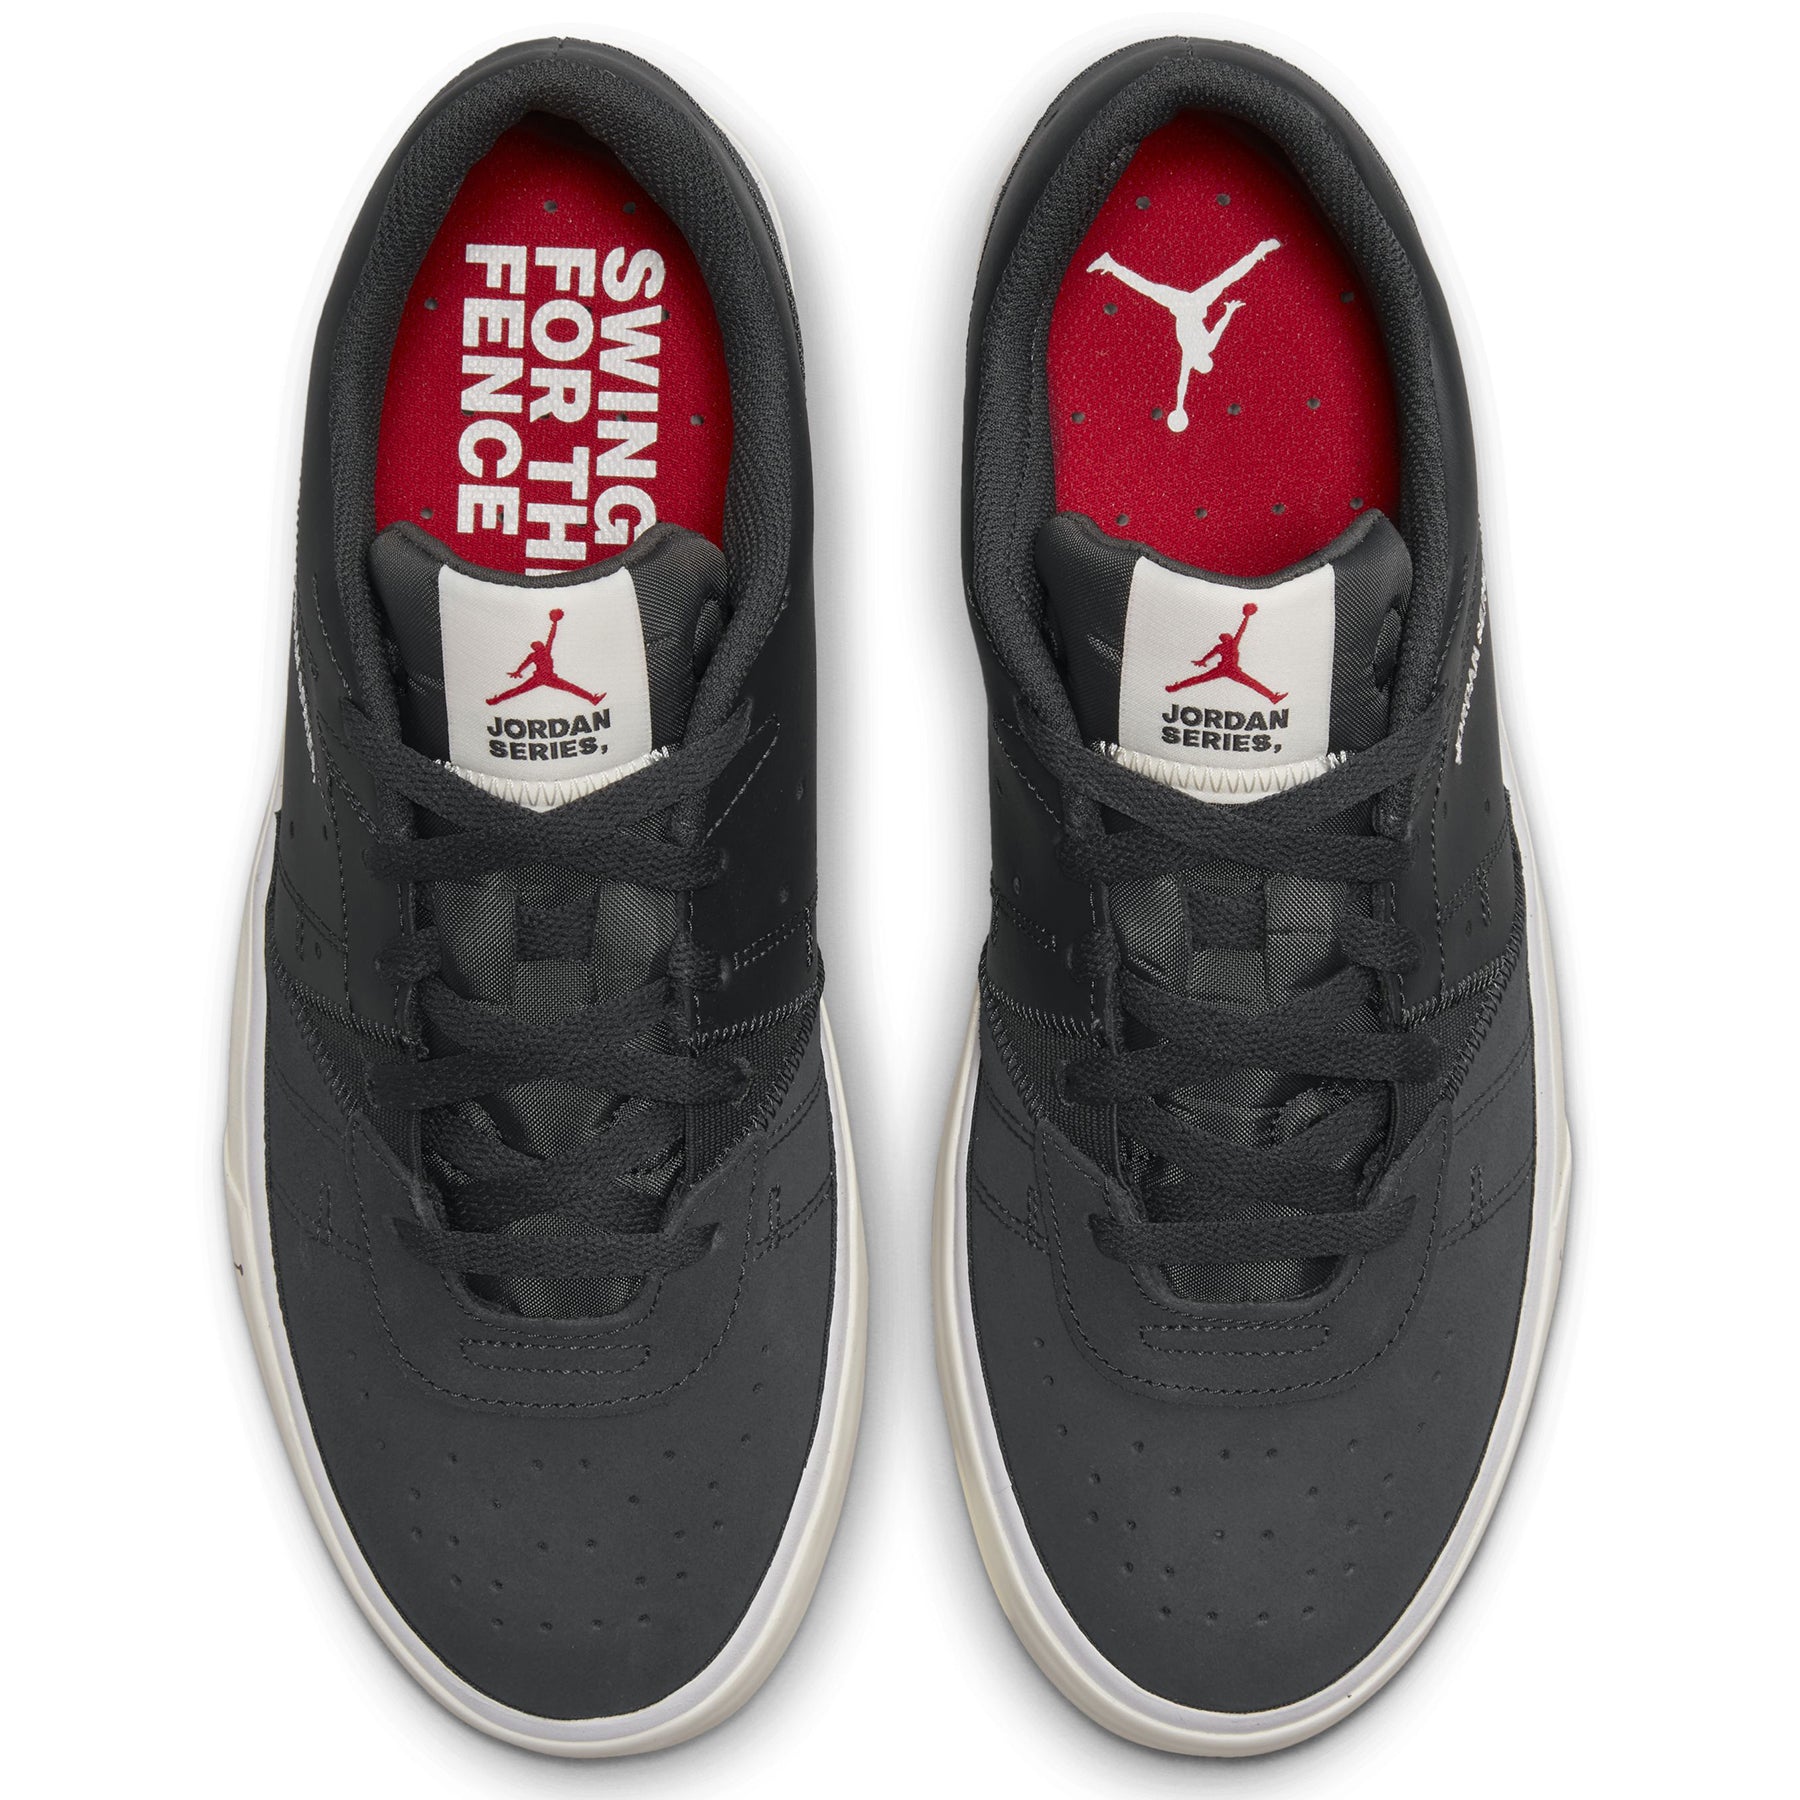 Zapatillas Nike Hombre Urbanas Jordan Series ES